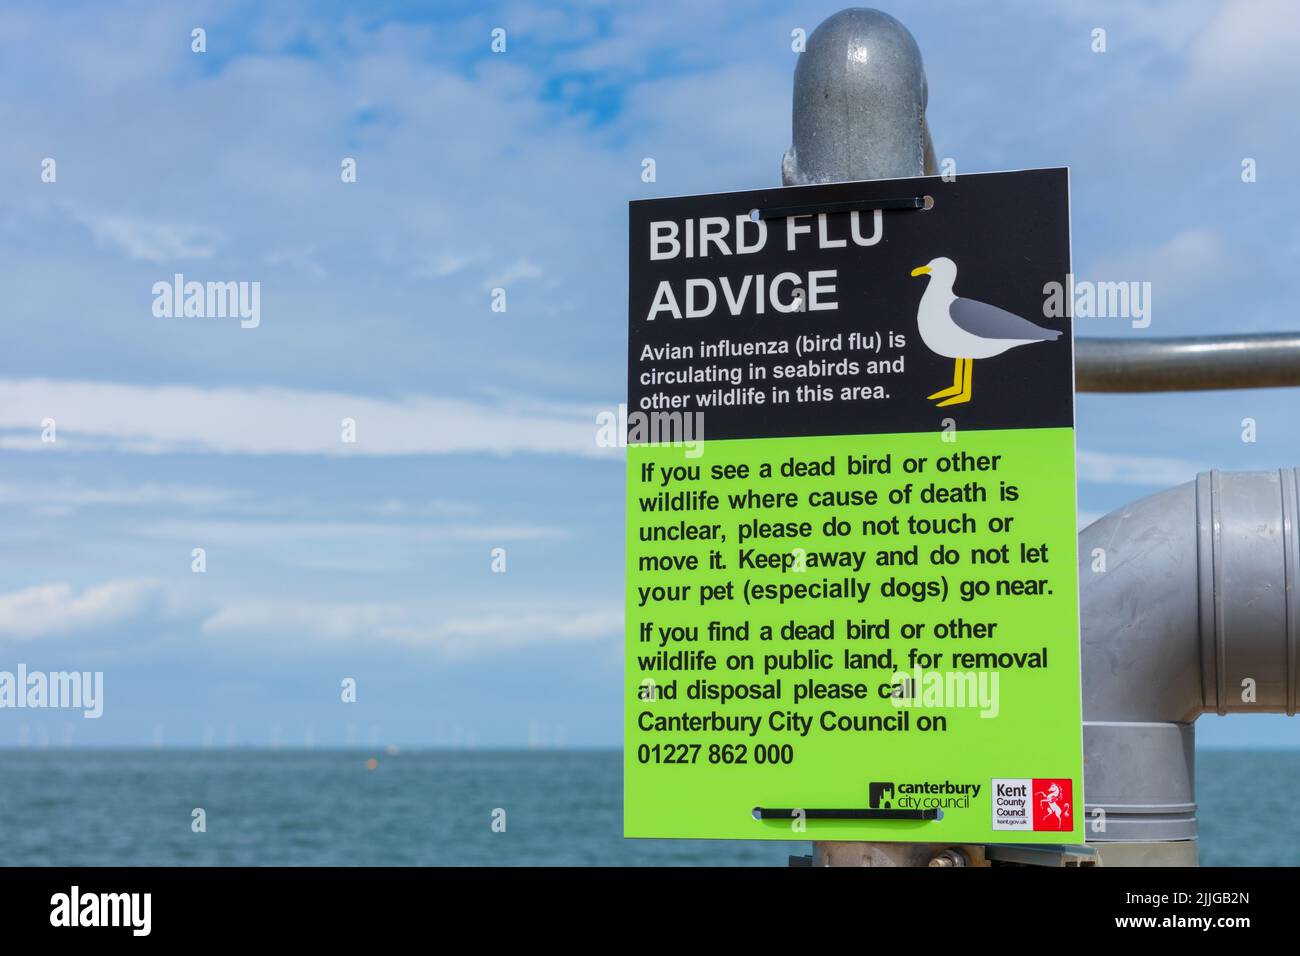 Herne Bay, Kent, Reino Unido: Señales de aviso sobre la gripe aviar recientemente erigidas a raíz de 104 casos confirmados de gripe aviar (H5N1) en el Reino Unido. Foto de stock